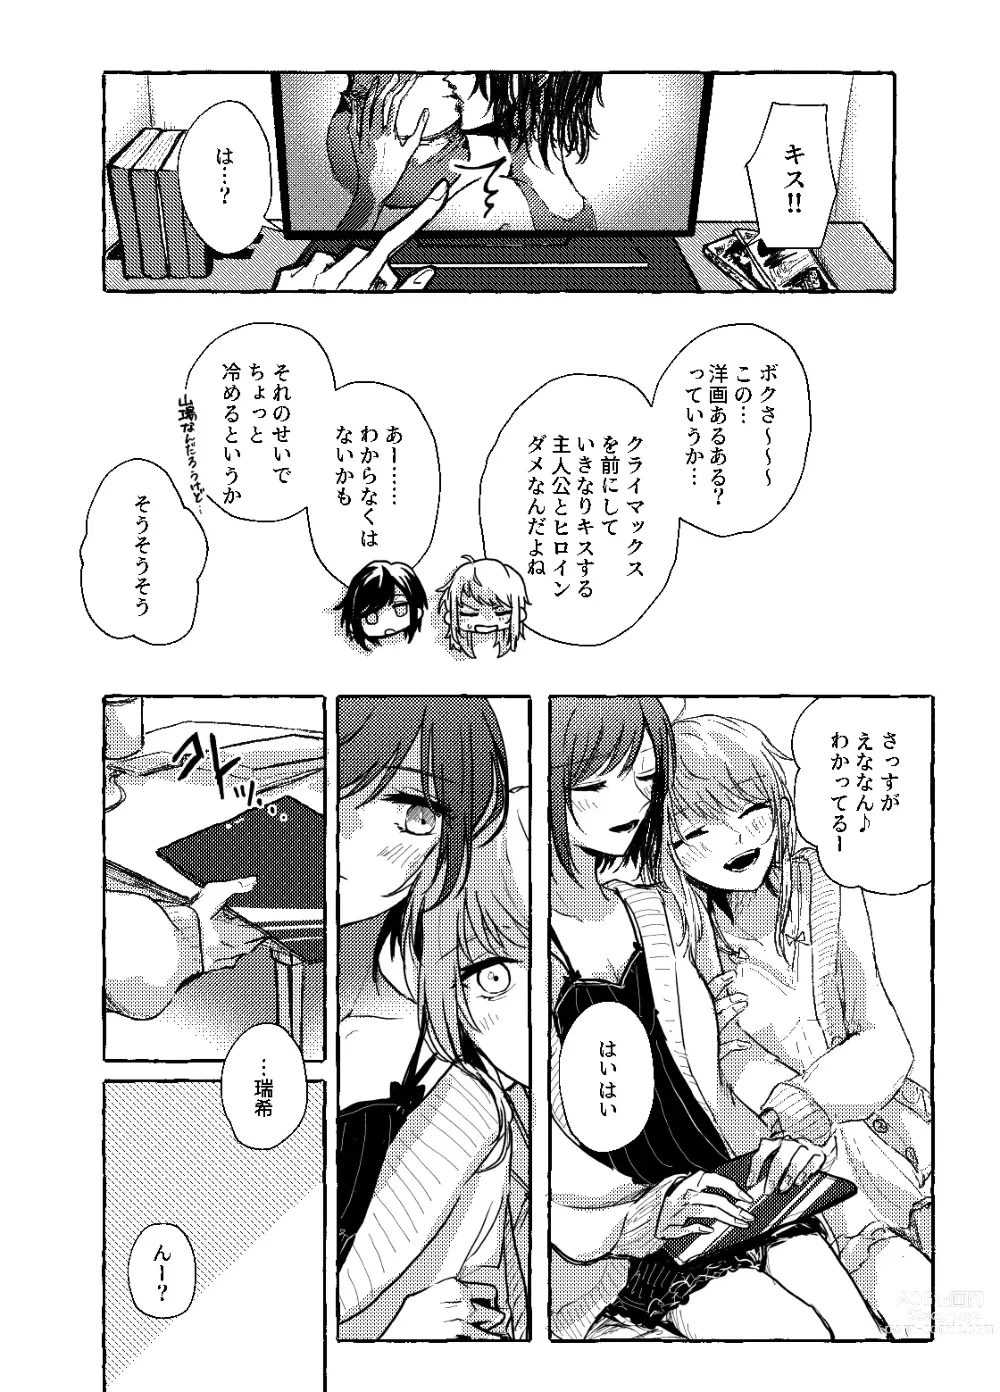 Page 6 of doujinshi Hakoniwa no Naka no Kimi